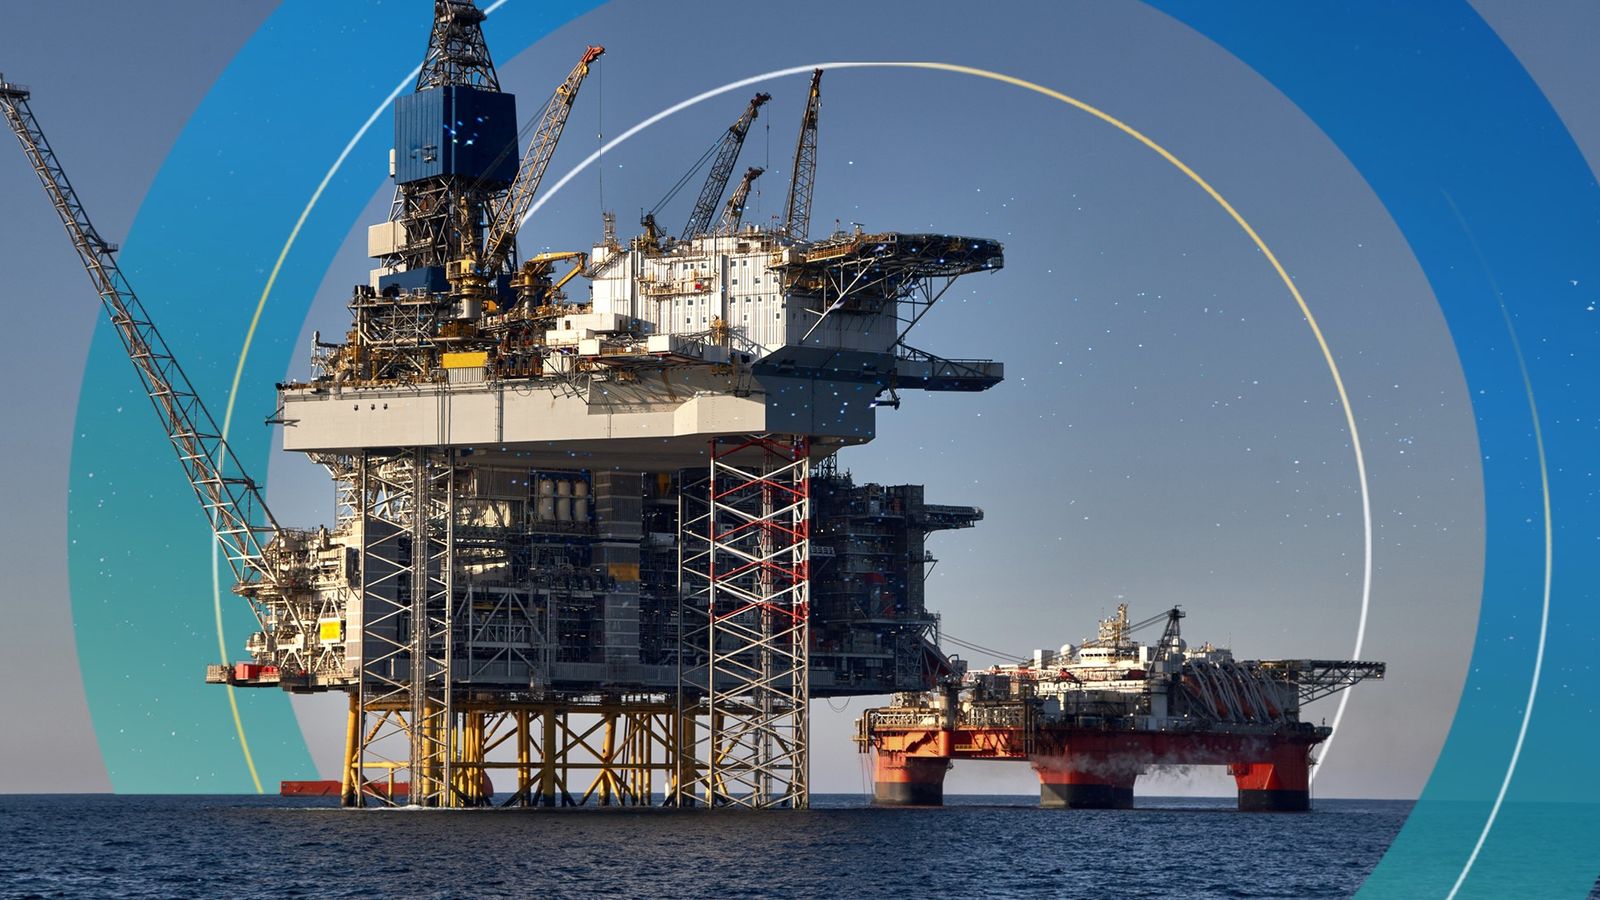 Le gouvernement défie les avertissements climatiques en procédant à une nouvelle exploration pétrolière et gazière en mer du Nord |  Actualité politique